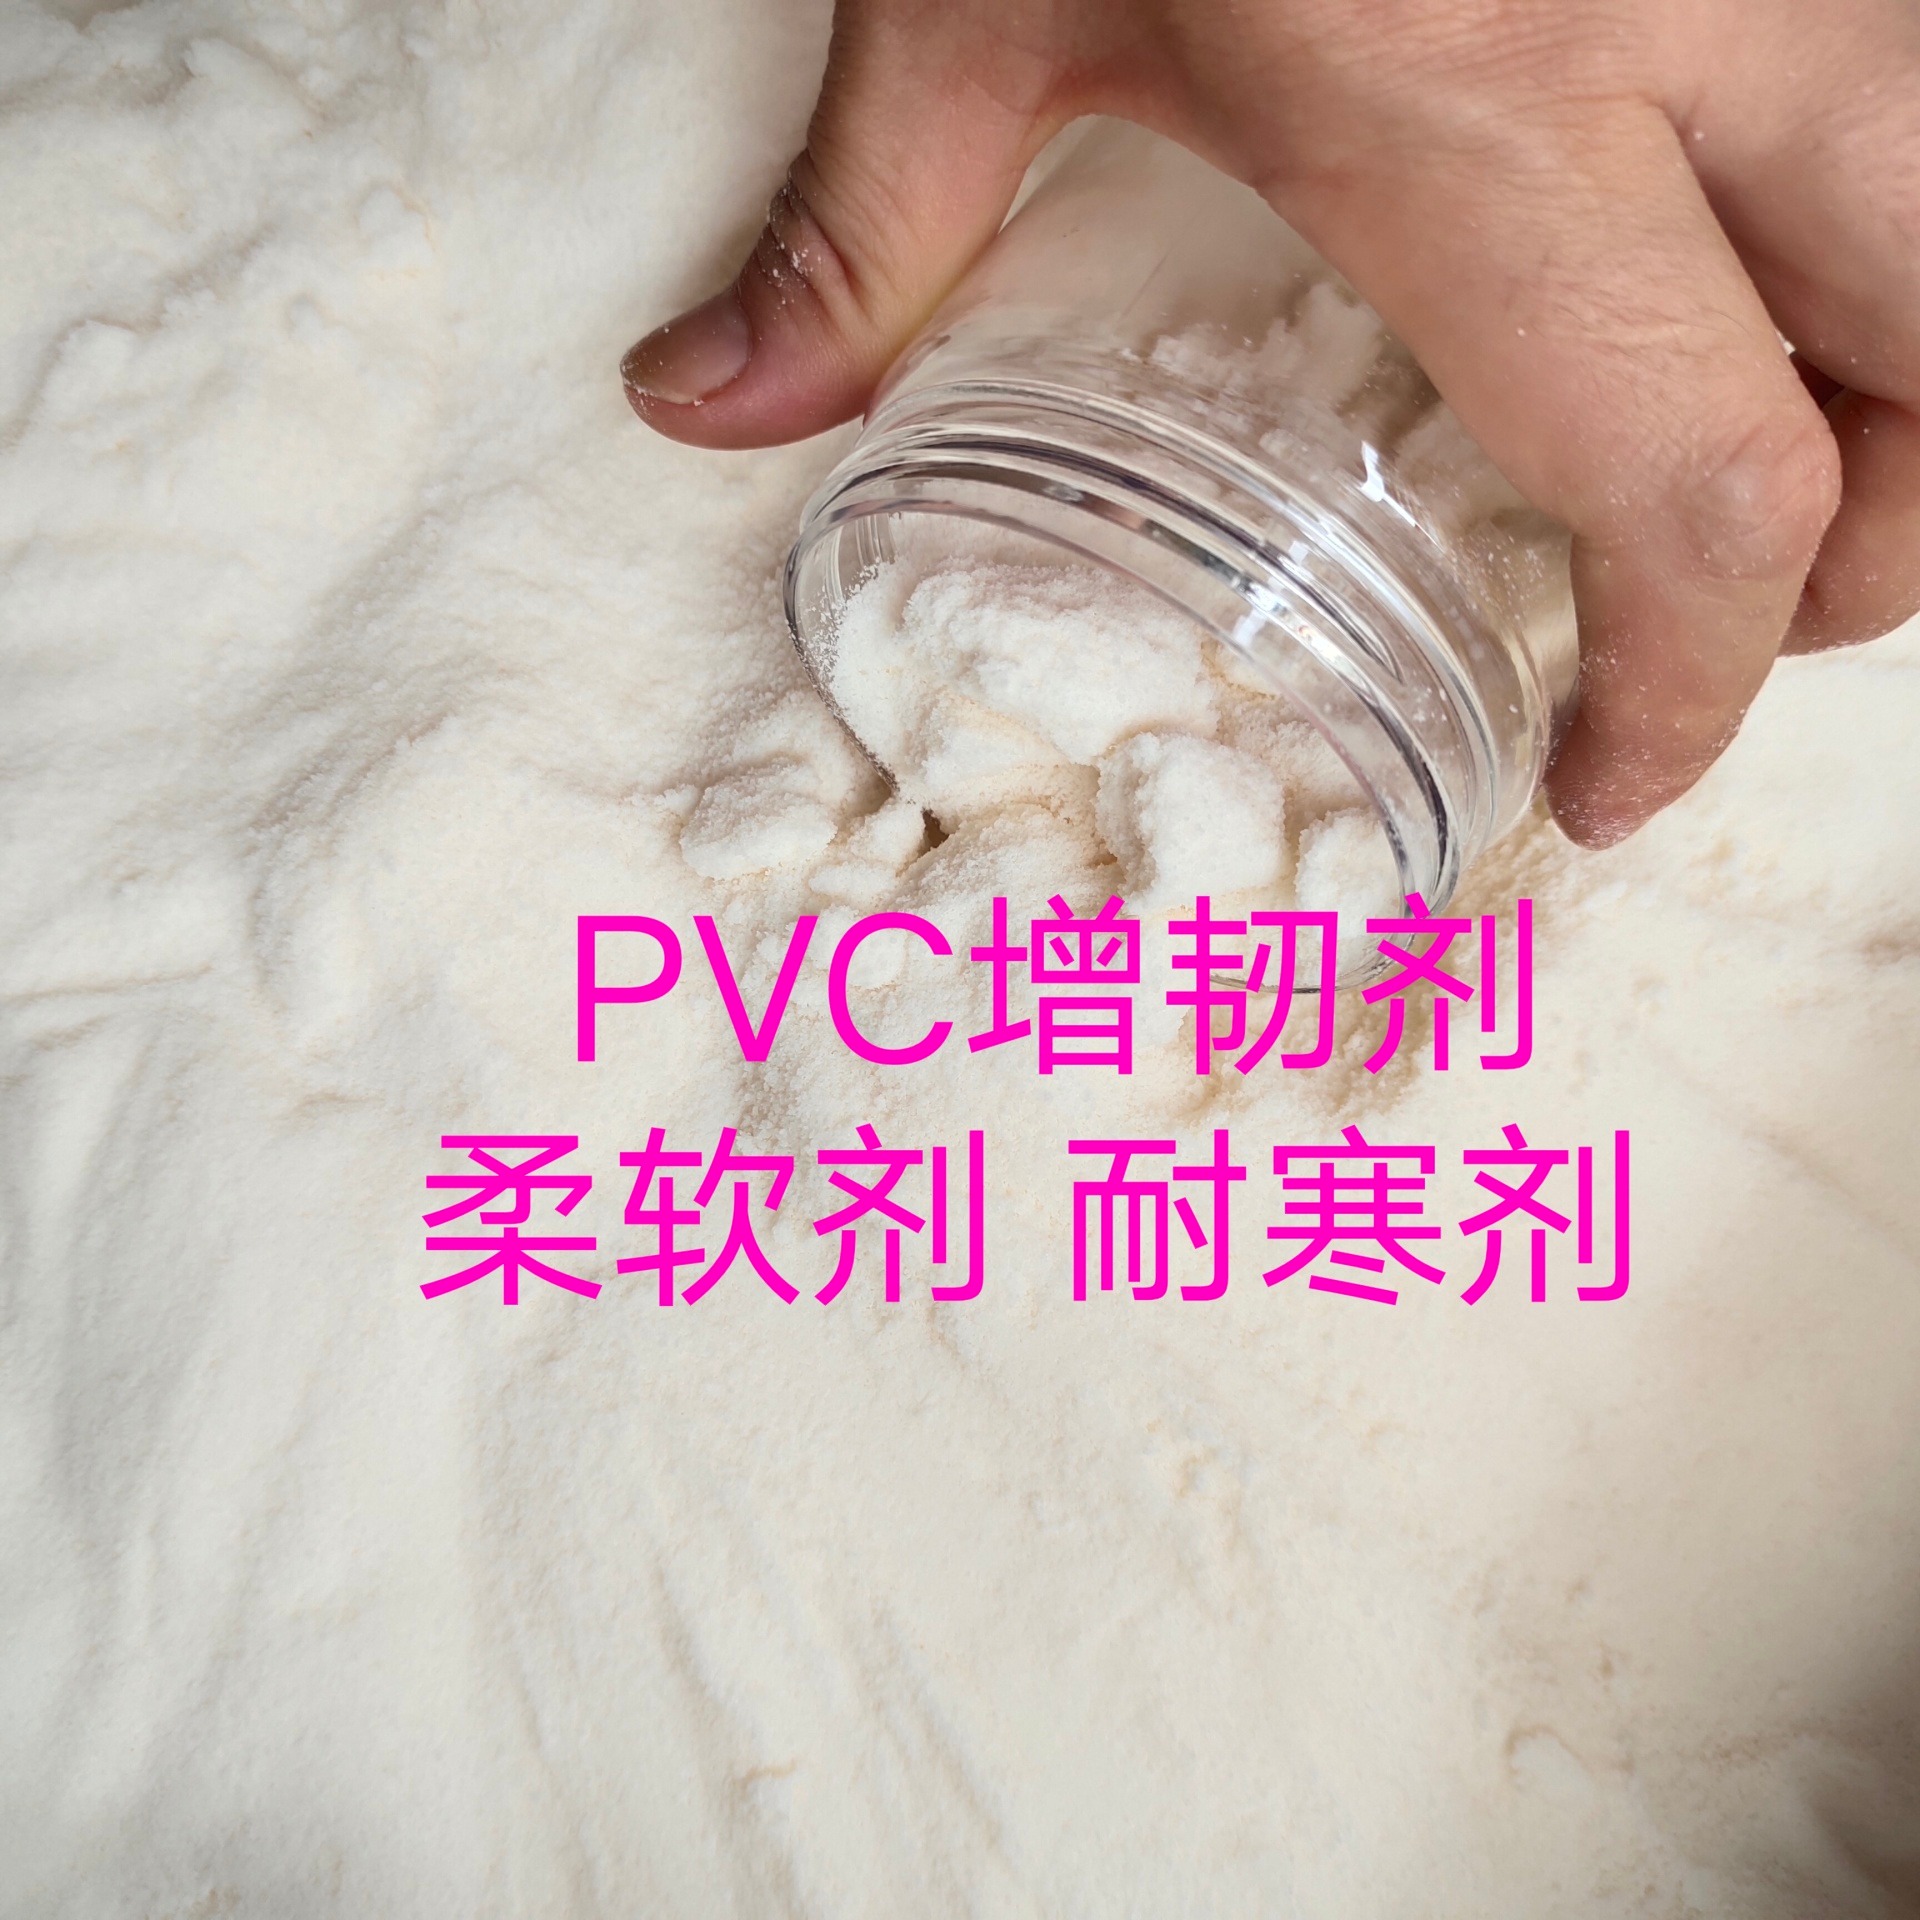 PVC发泡鞋底韧性差    丁腈橡胶粉末  提高PVC韧性   增加弹力  耐寒效果好   透明度好